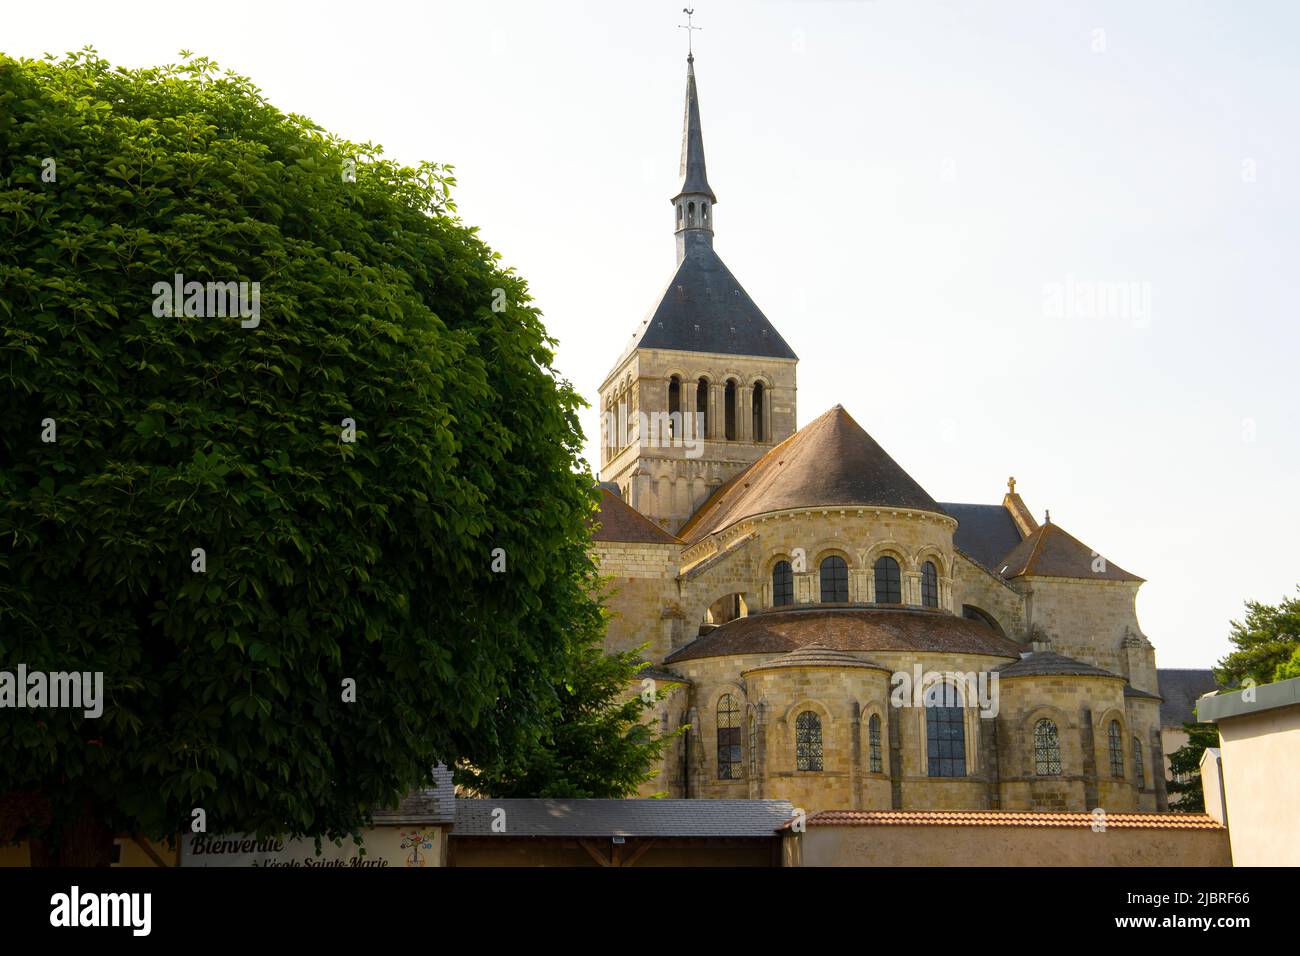 La iglesia románica de la Abadía de San Benoit sur Loire (Abbaye de Fleury). Región de Loiret, en el centro-norte de Francia. Foto de stock